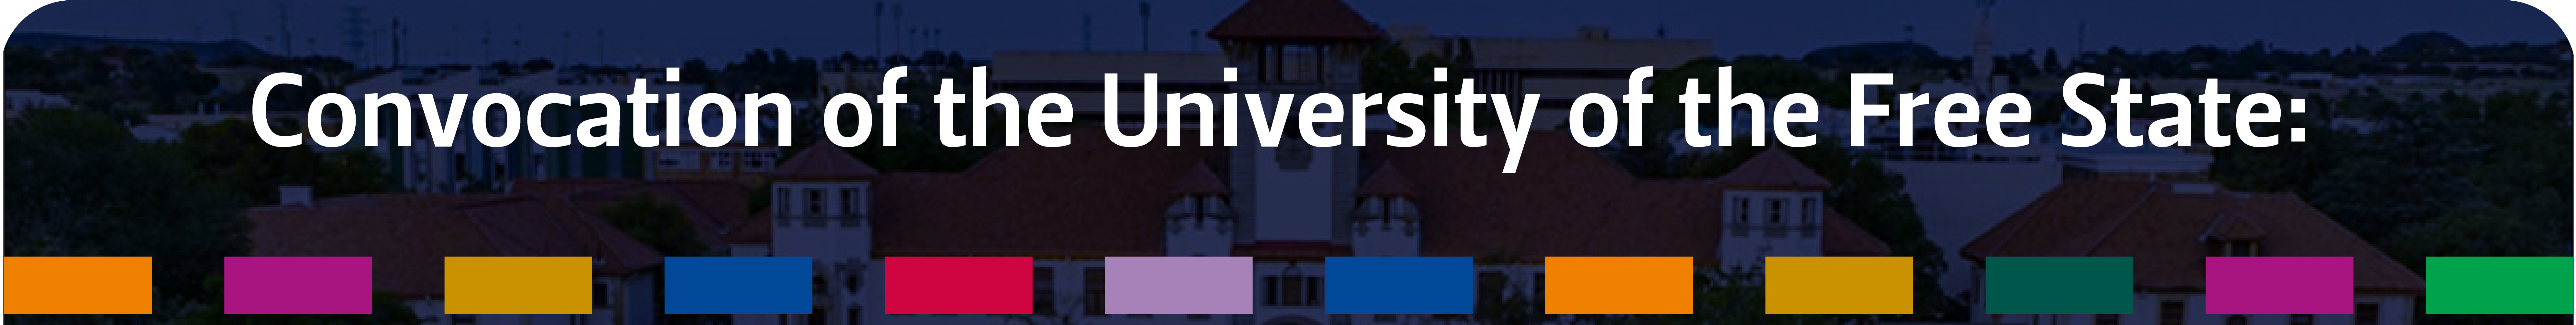 UFS Convocation banner